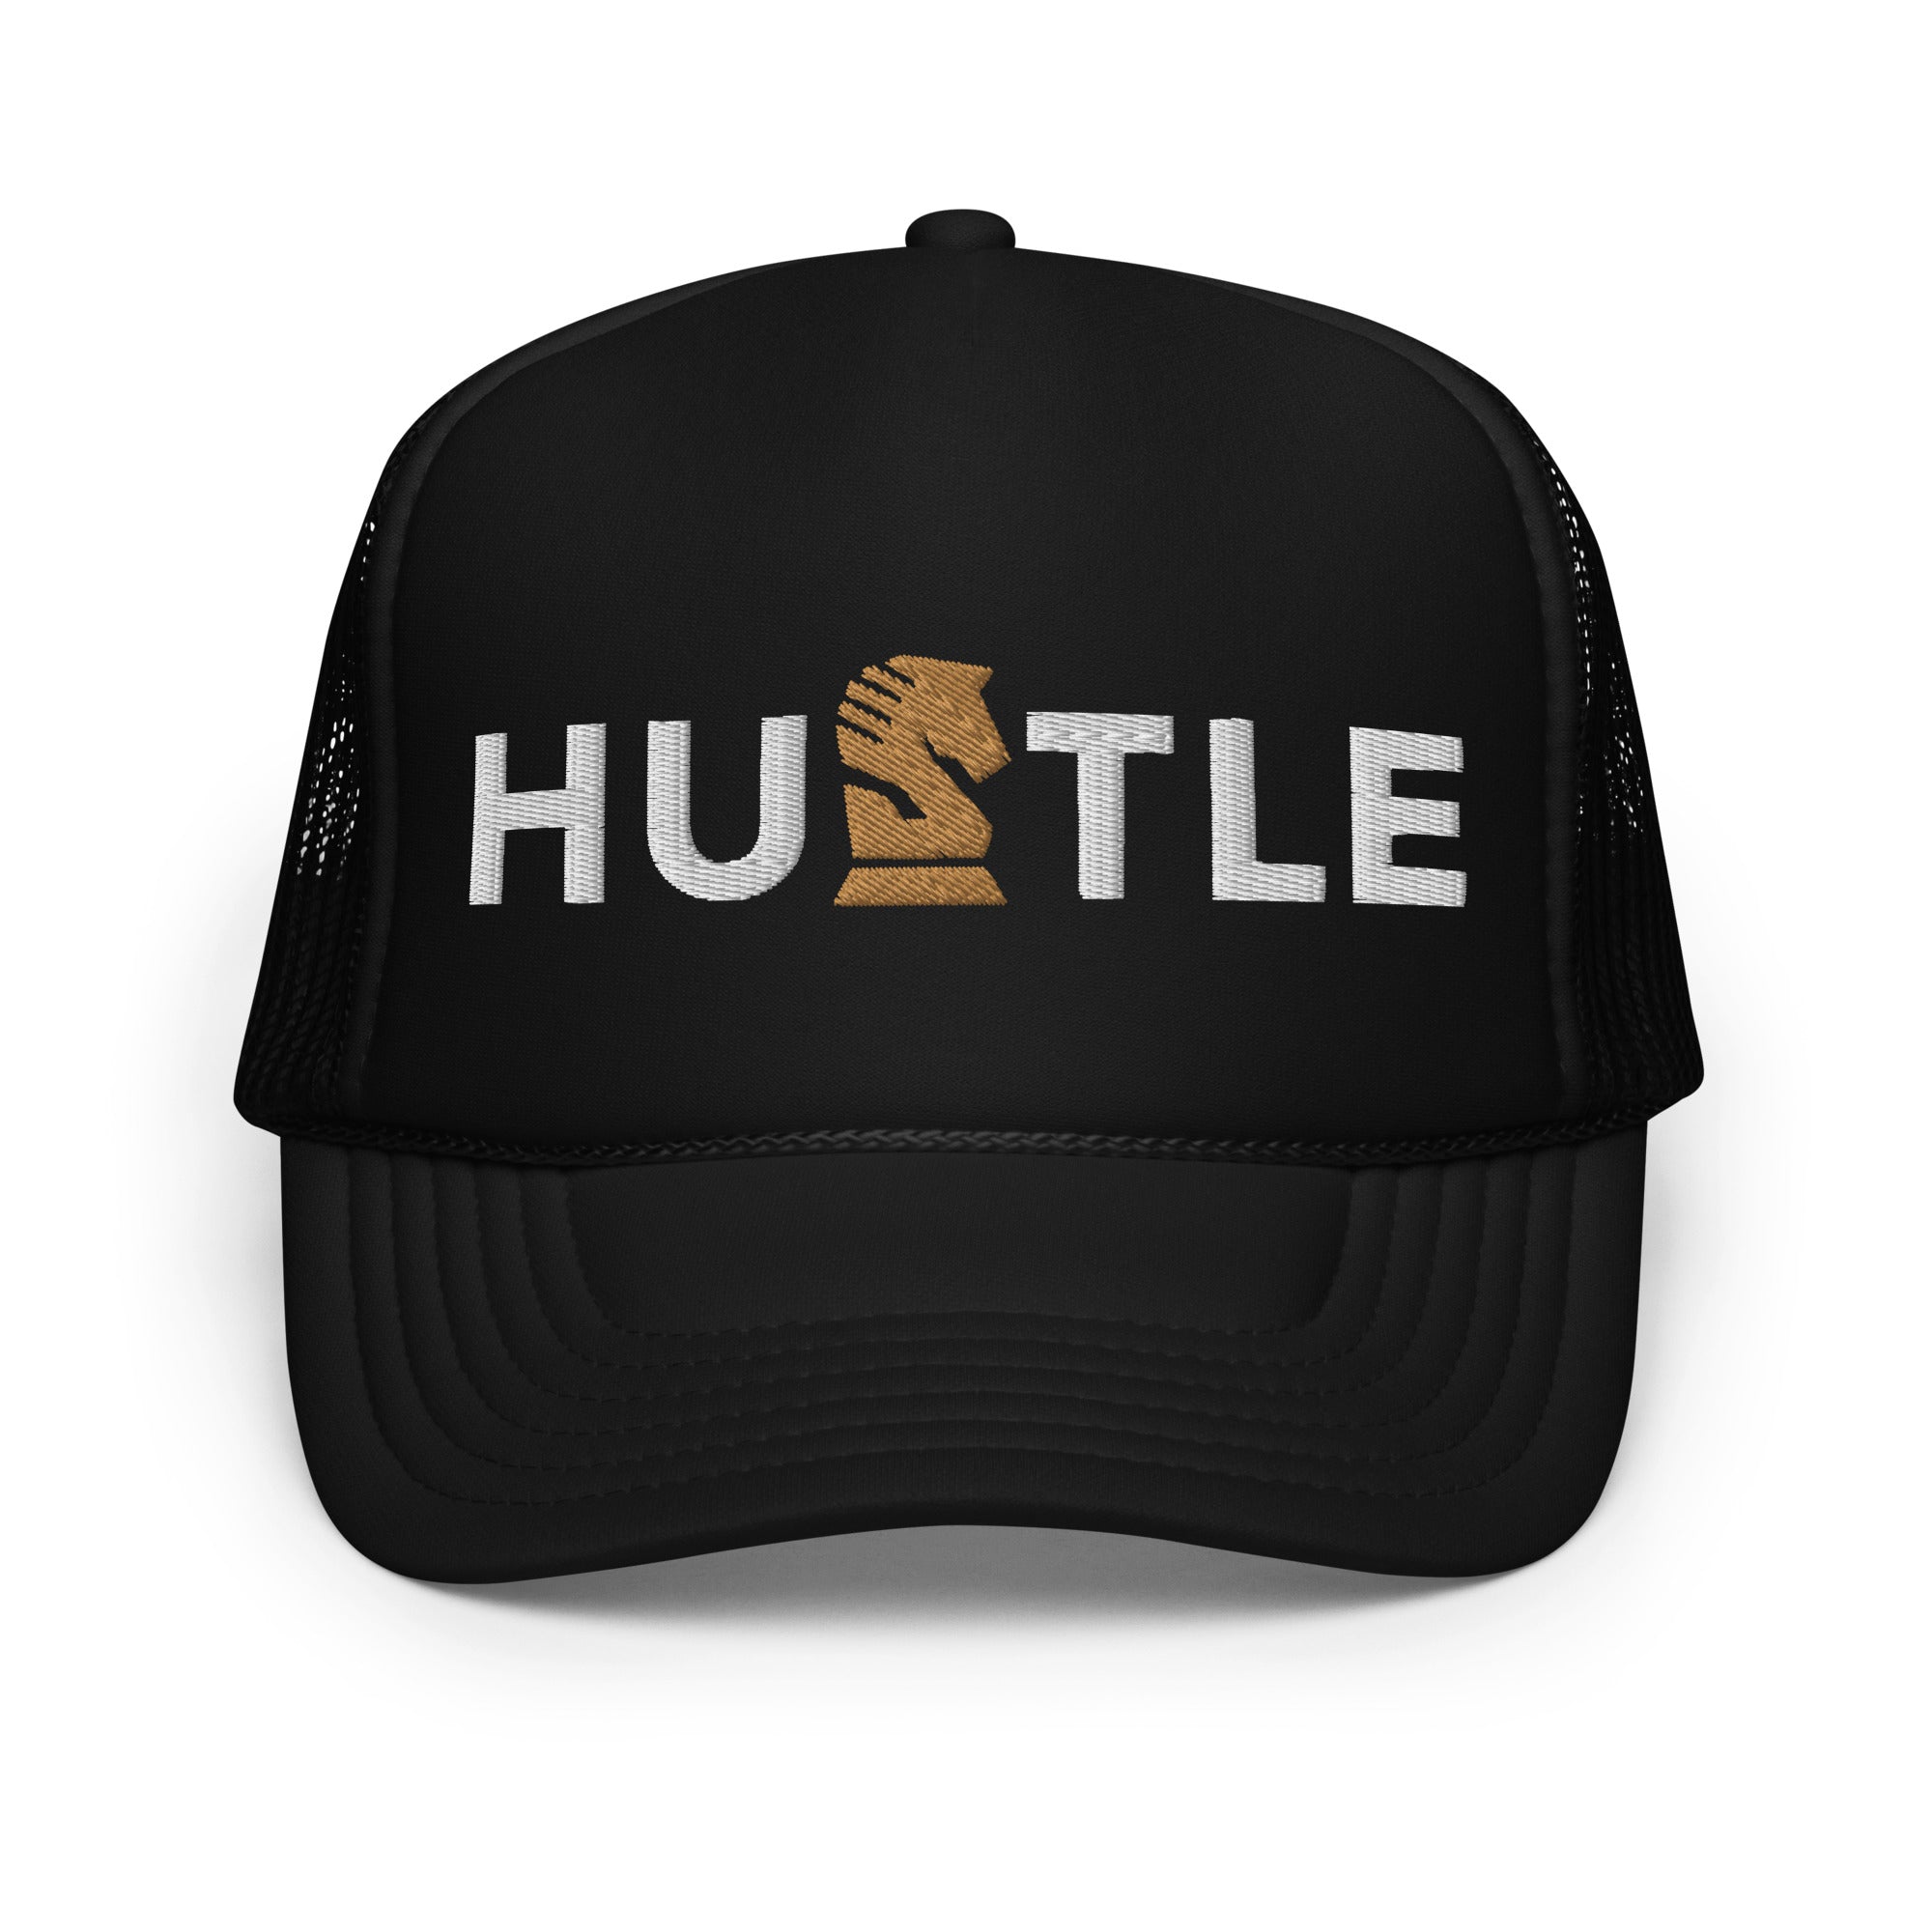 Hustle Foam trucker hat